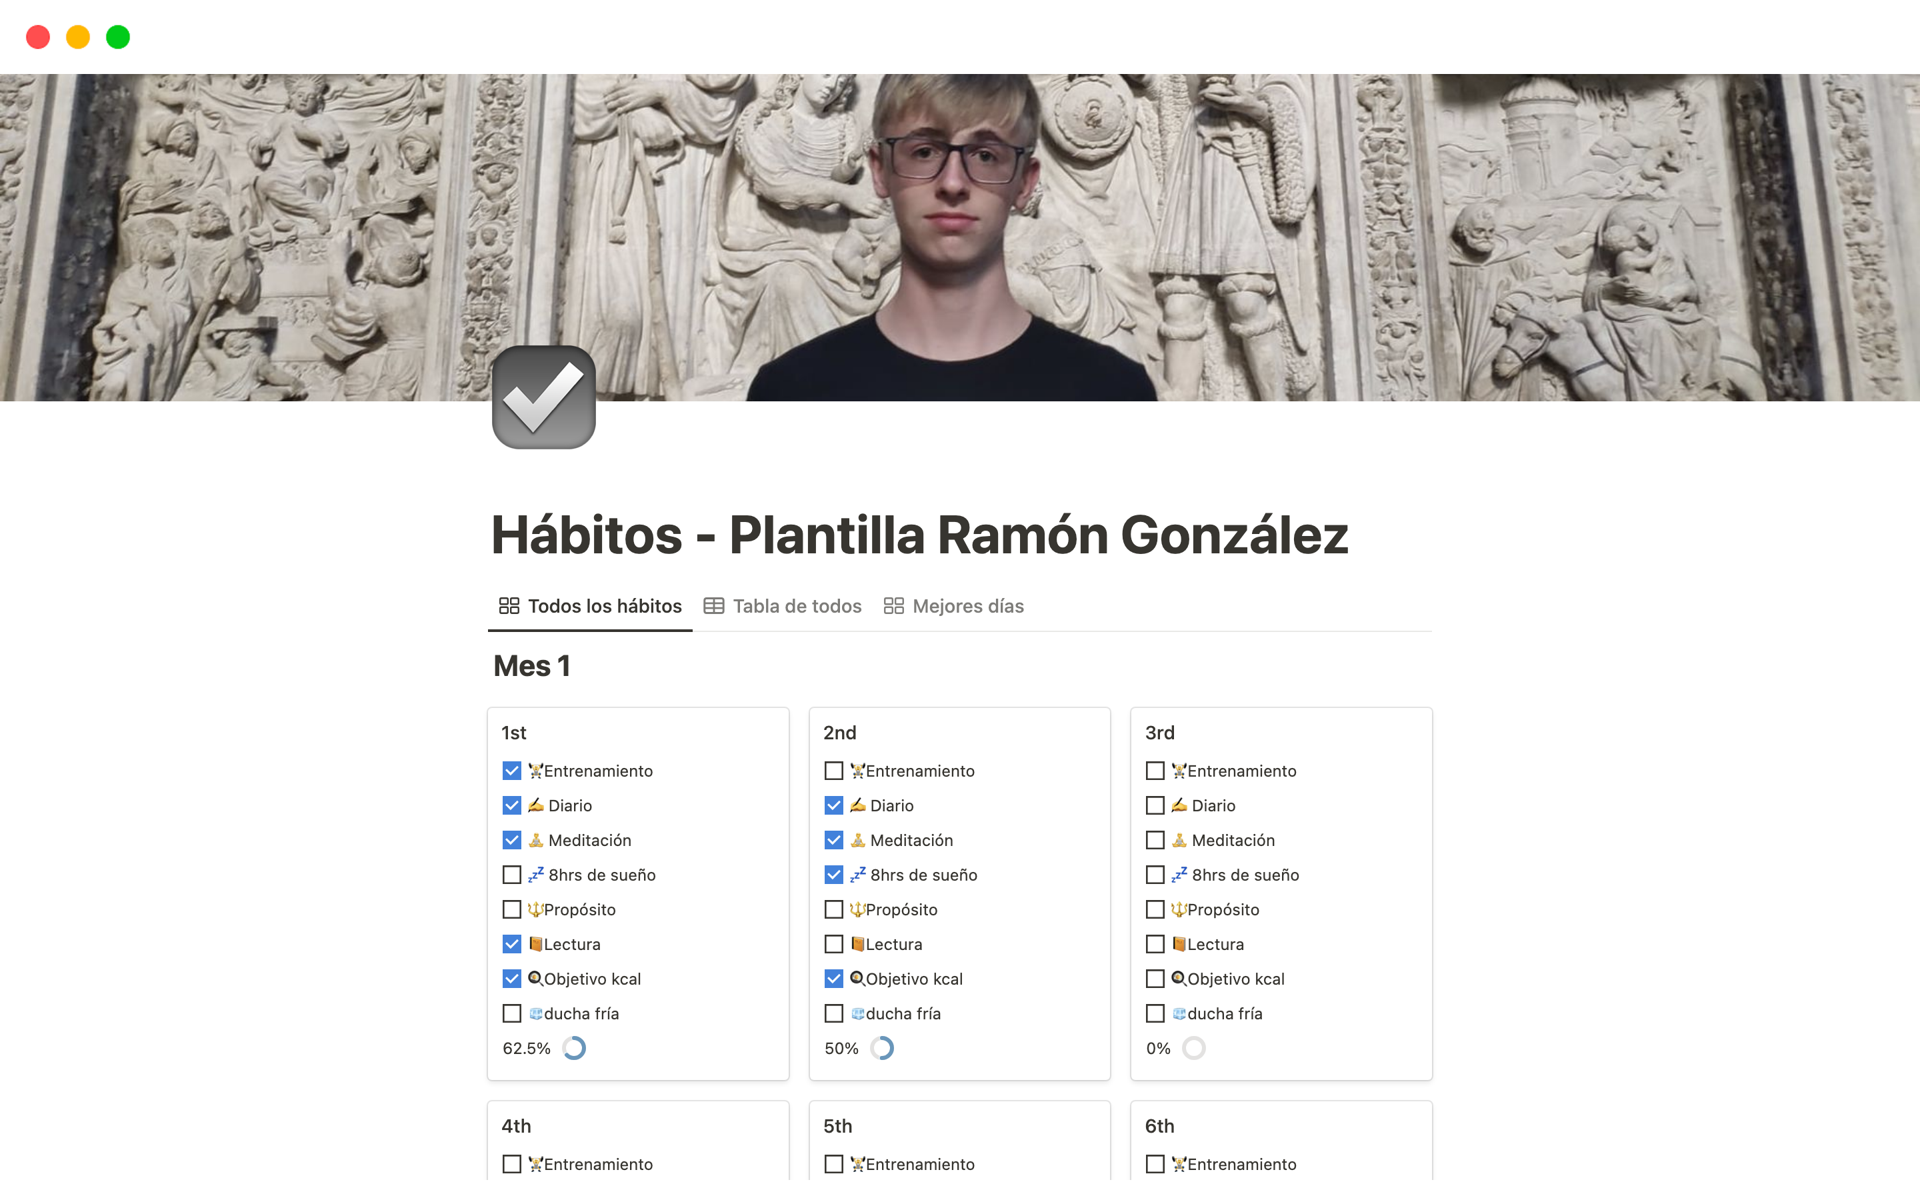 A template preview for Hábitos - Plantilla Ramón González